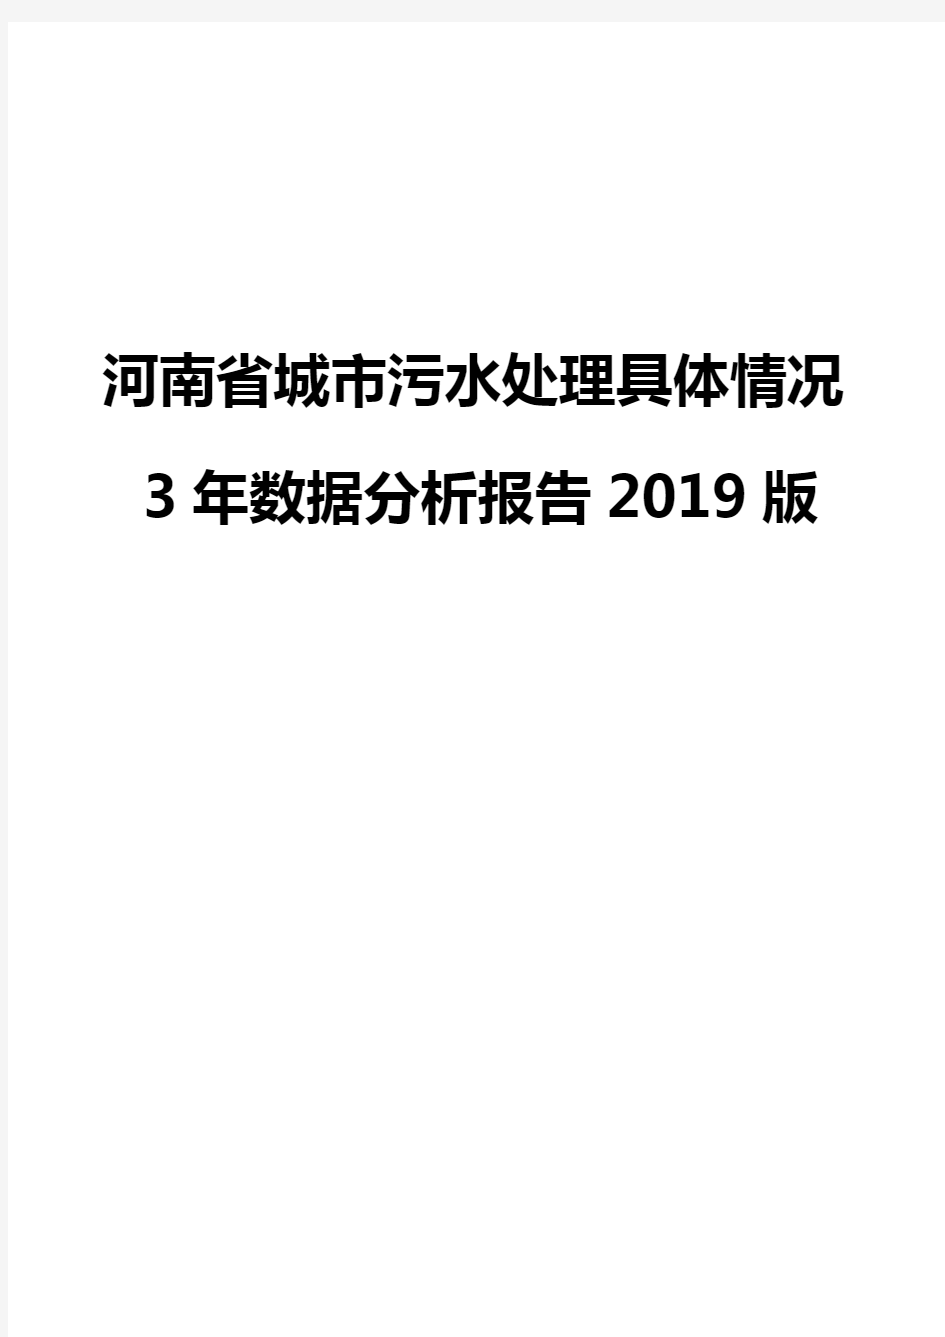 河南省城市污水处理具体情况3年数据分析报告2019版